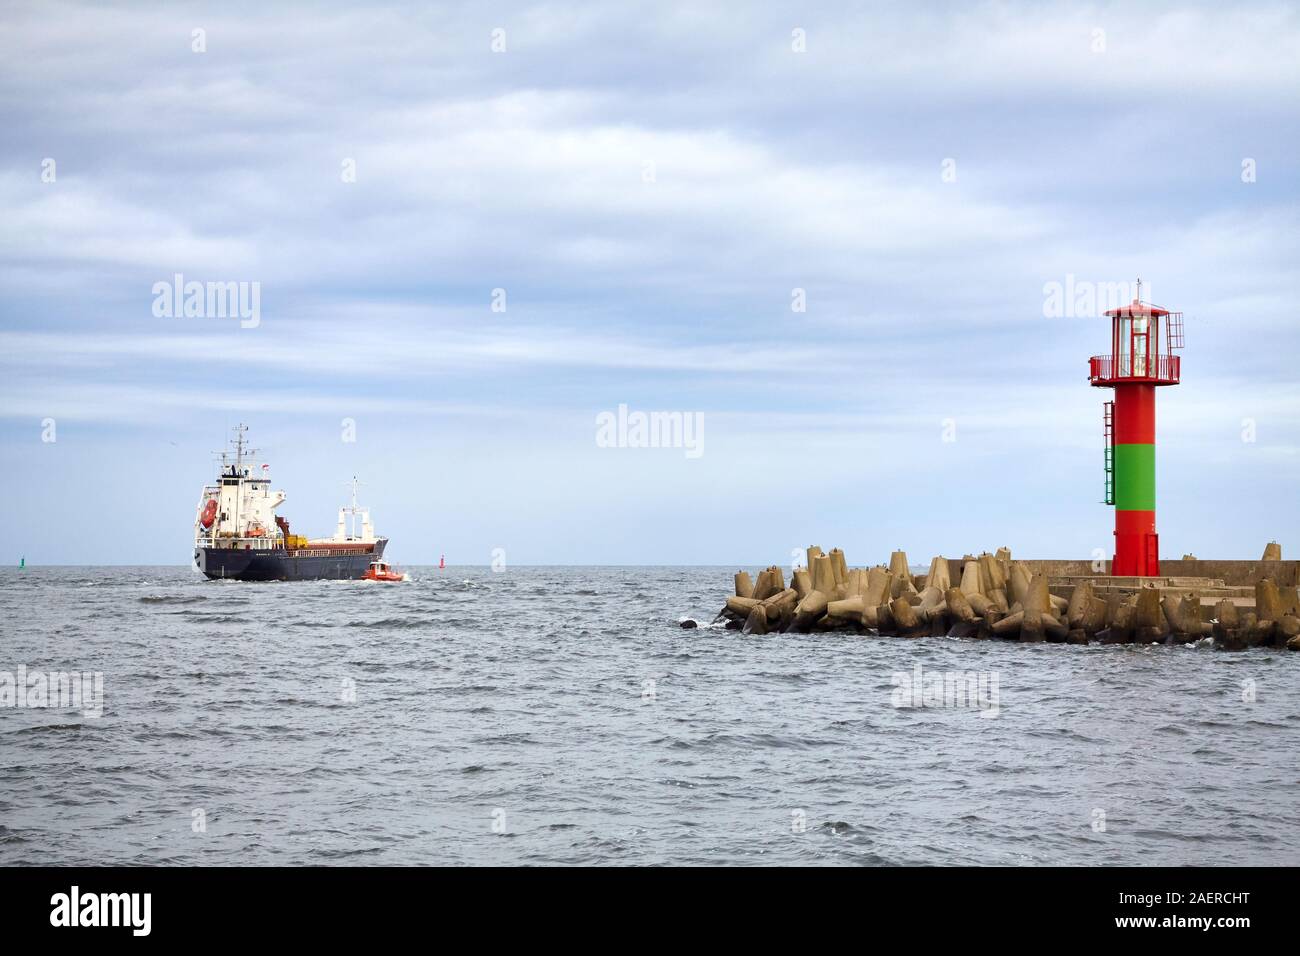 Bild von einem Schiff das Verlassen des Hafens, Swinoujscie, Polen. Stockfoto